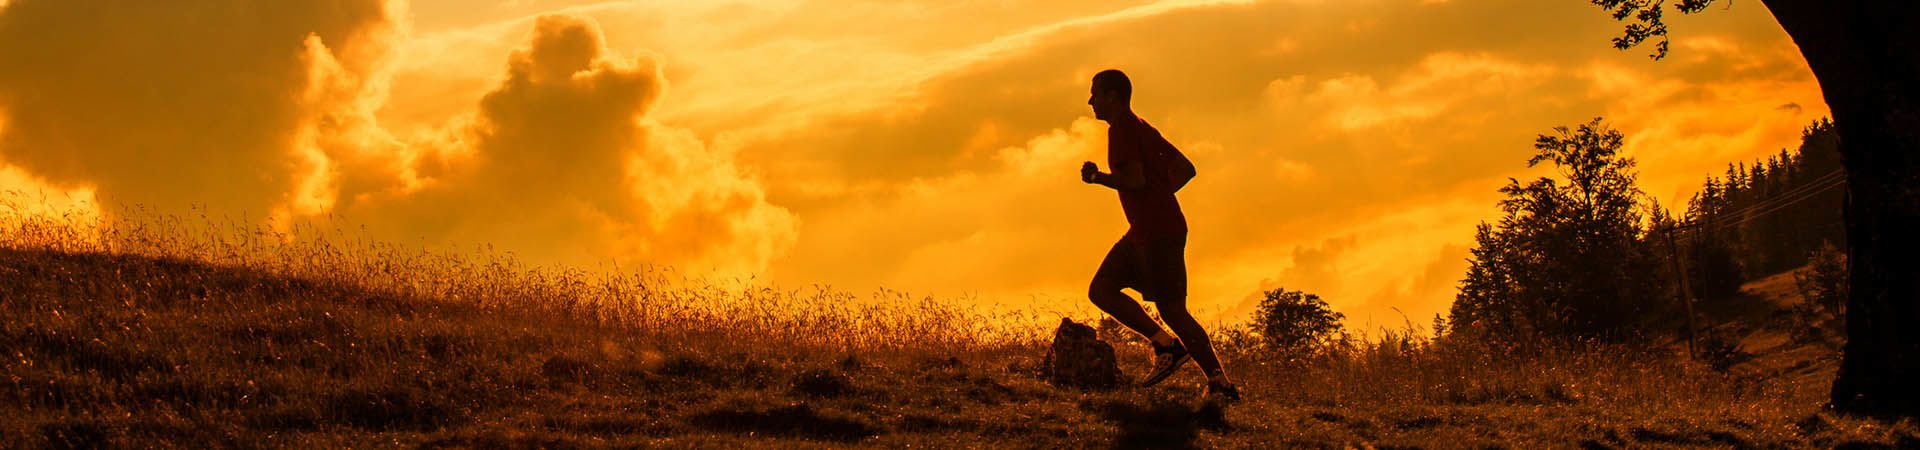 Une personne améliore sa condition physique grâce à la course à pied.